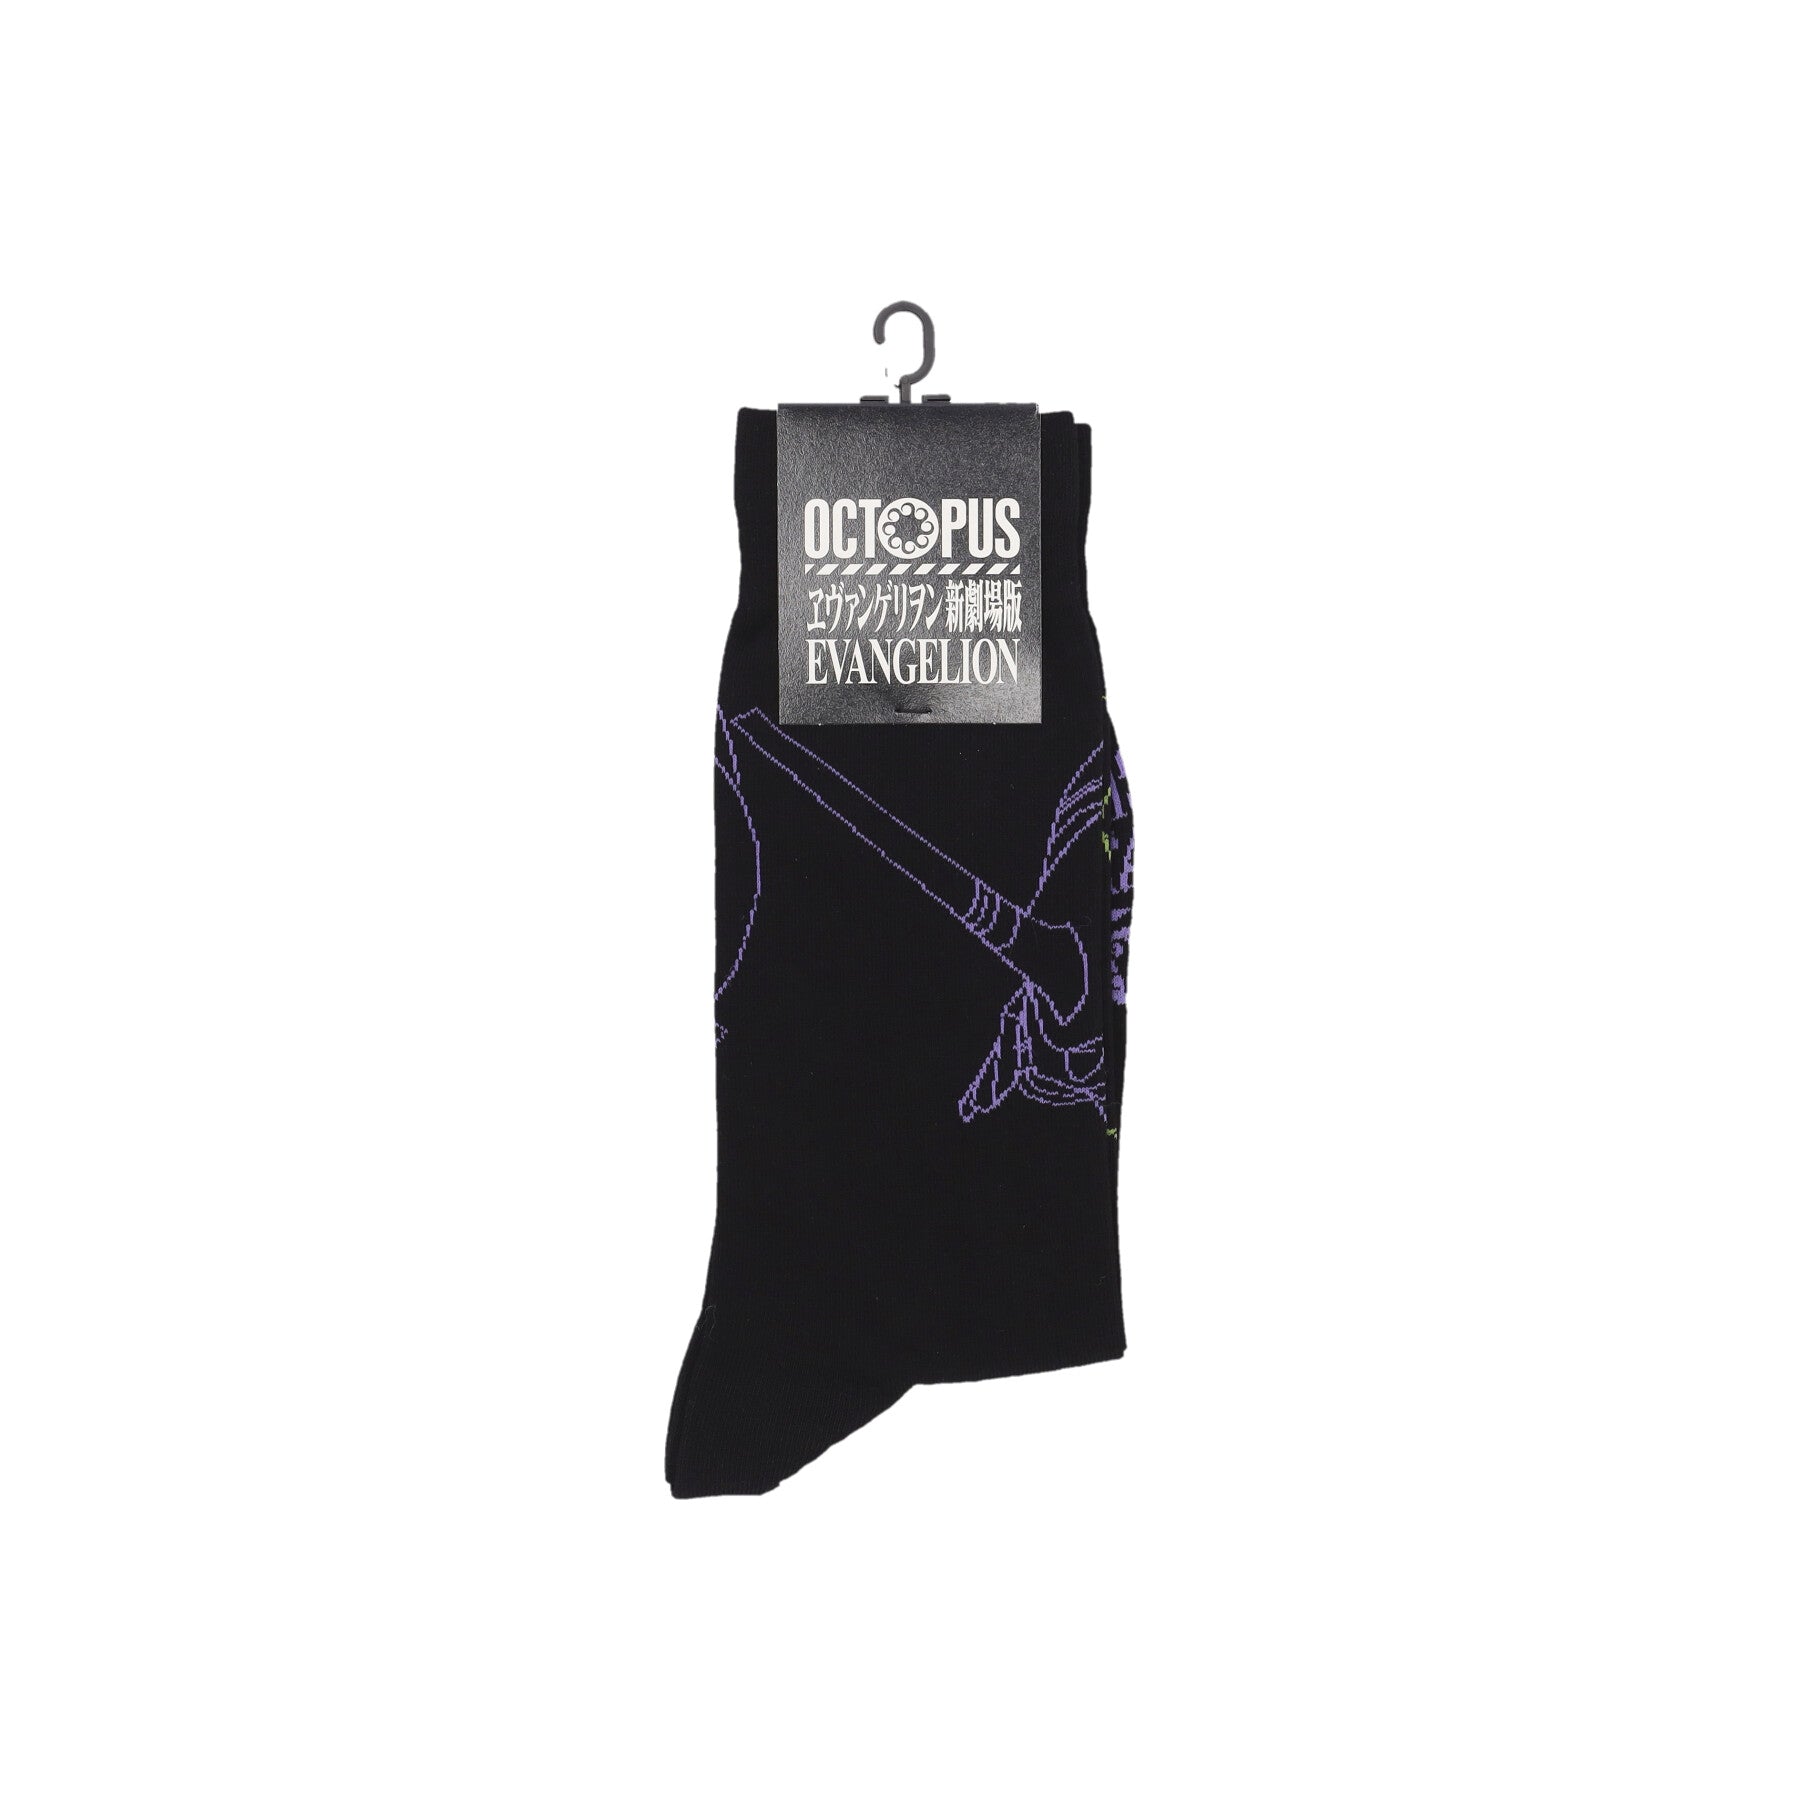 Medium Men's Sock Evangelion 01 Outline Socks Black